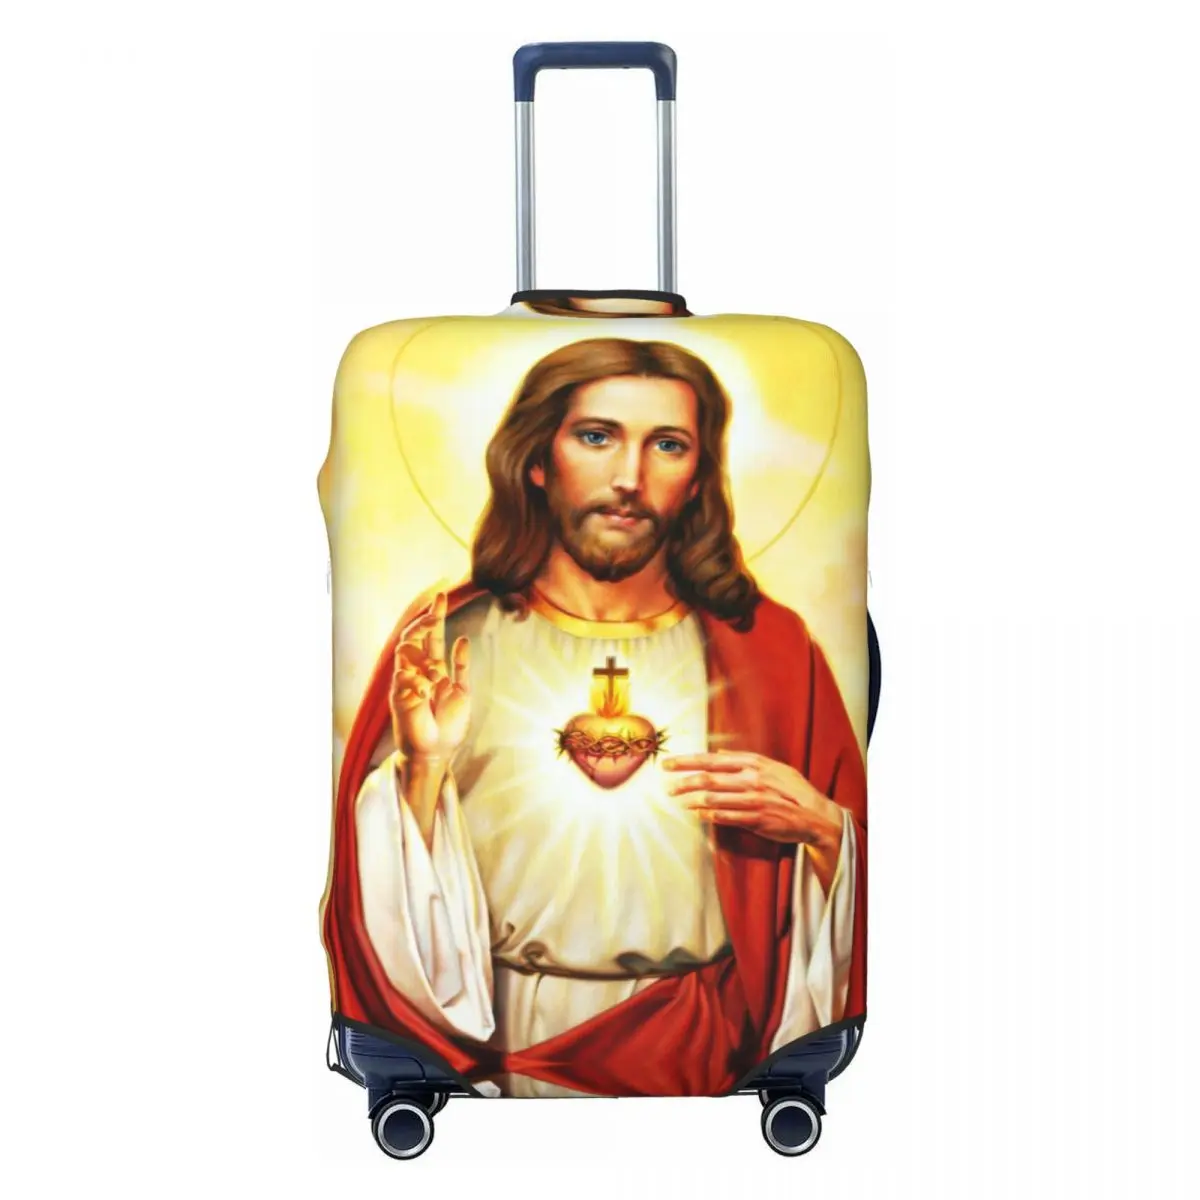 

Чехол для чемодана с изображением Сердца Иисуса, 18-32 дюйма